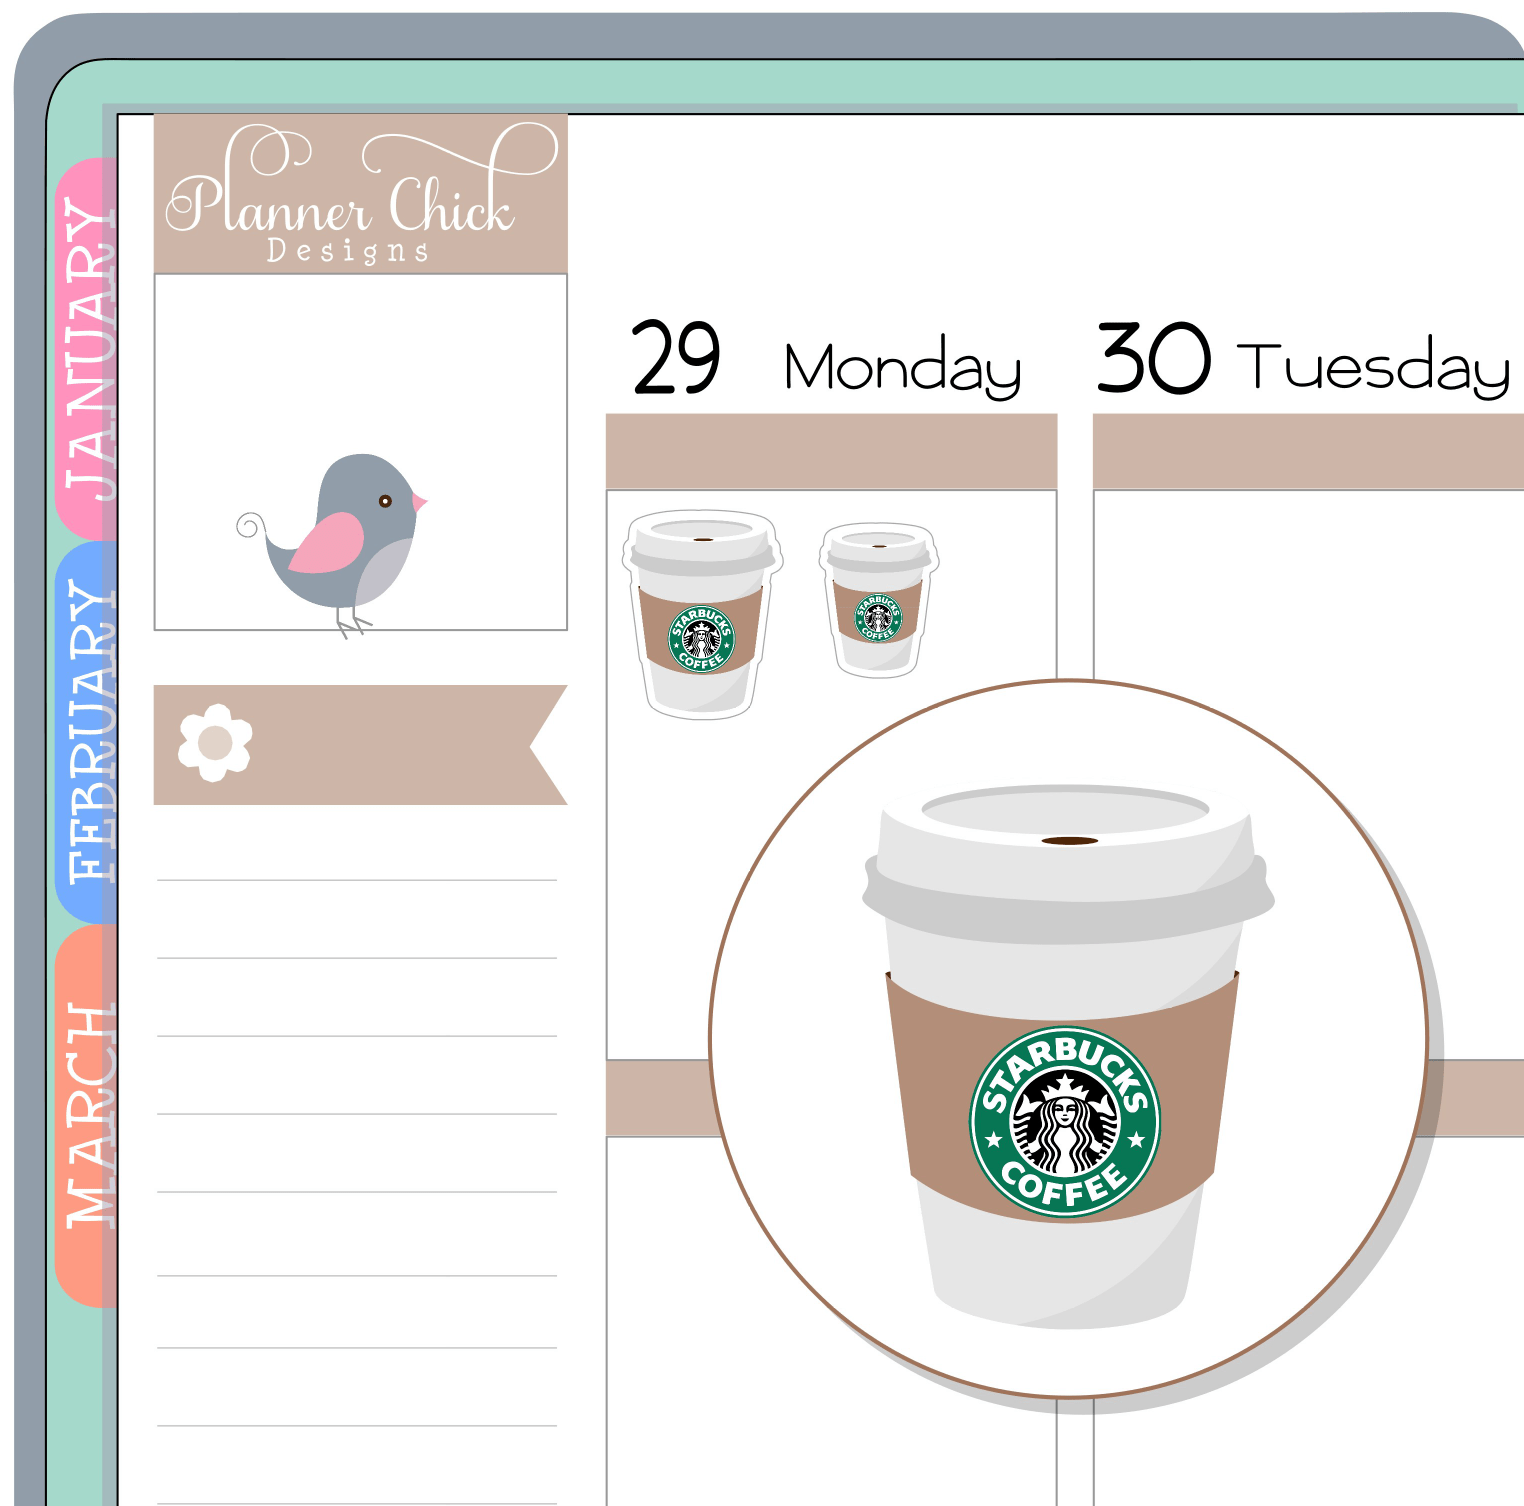 Starbucks Coffee - Mr + Mrs Mint Planner Stickers